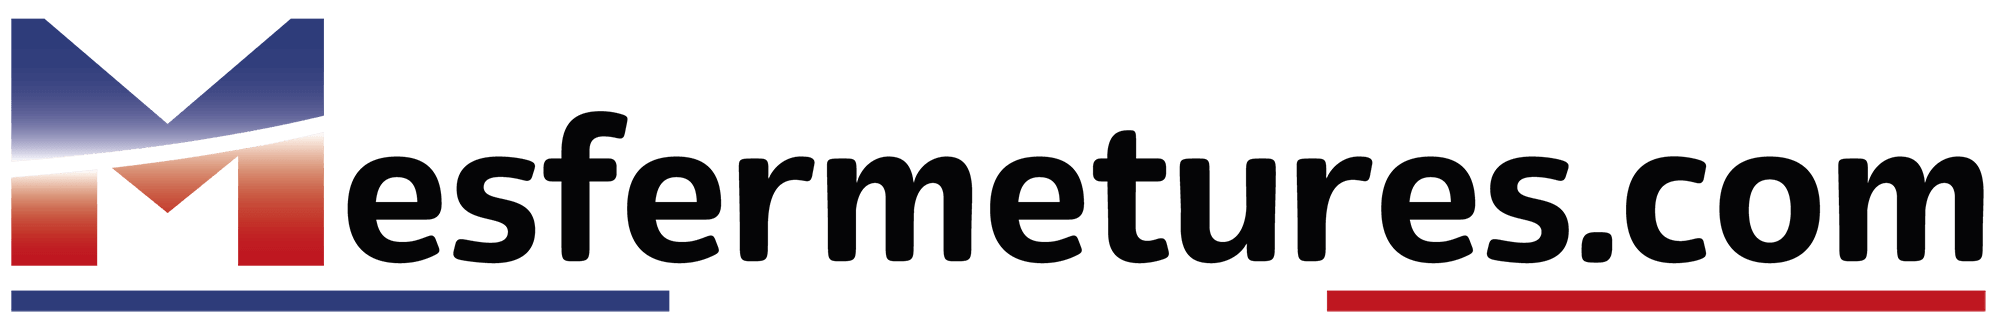 Logo Mesfermetures.com